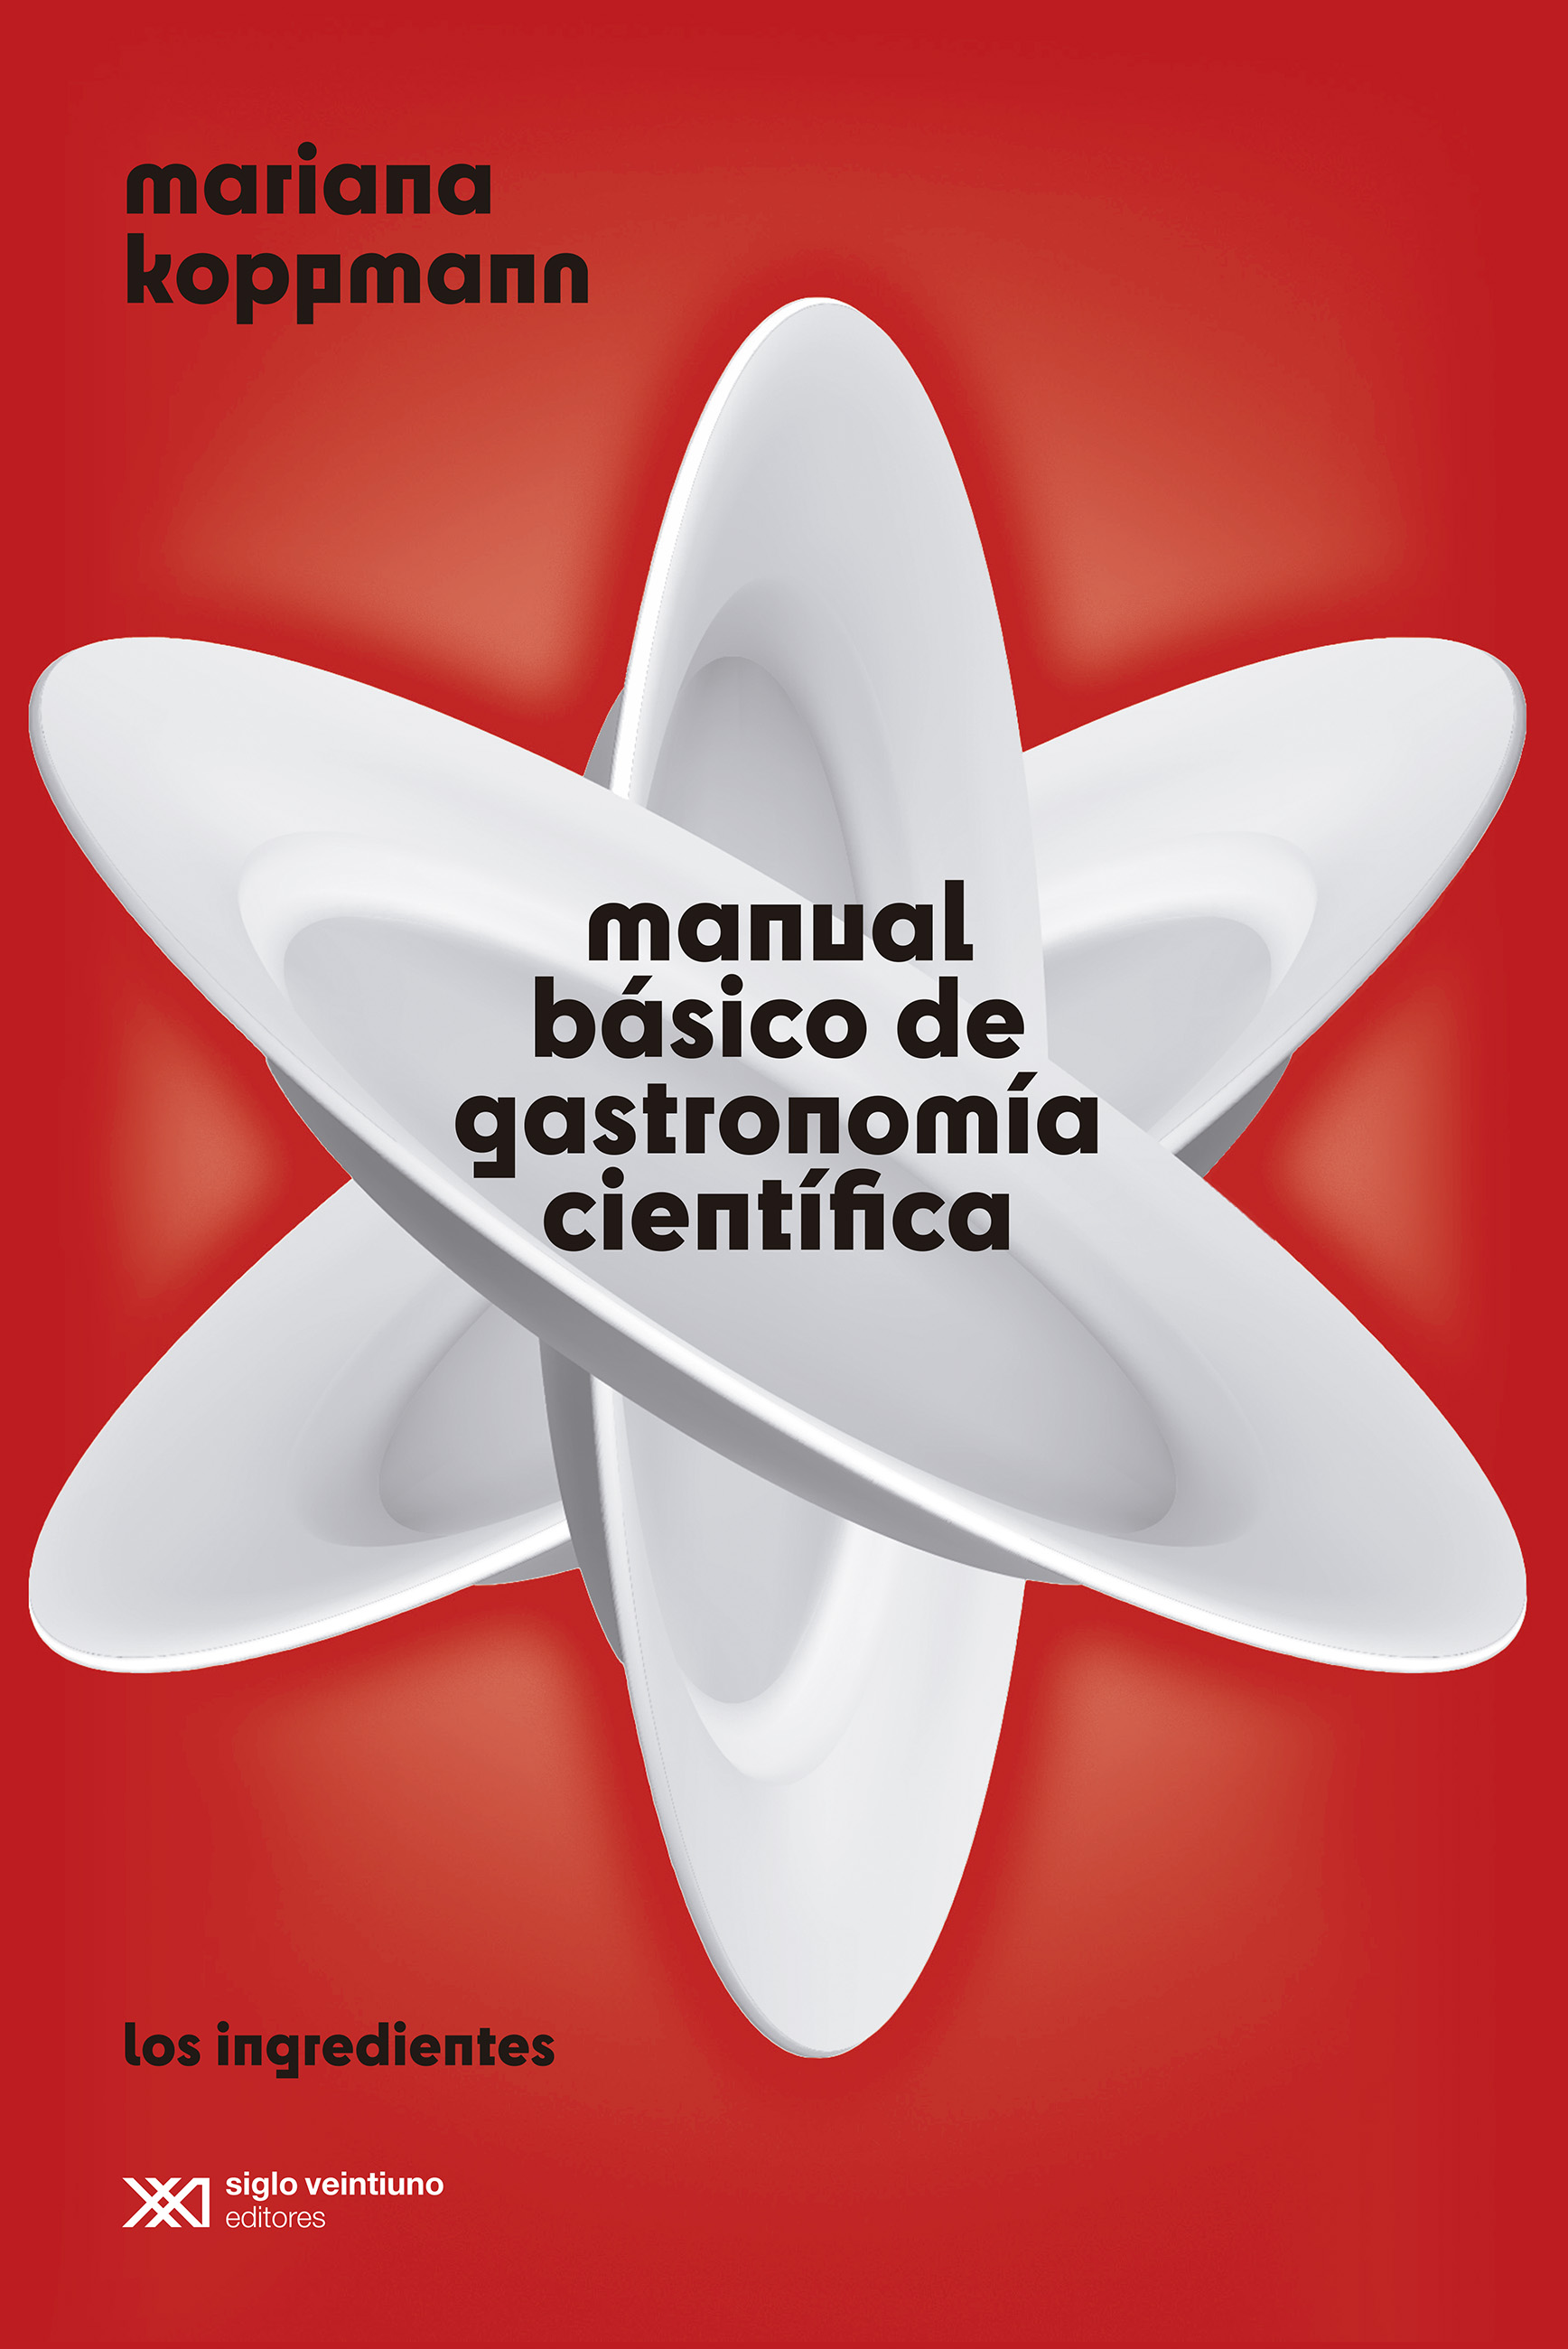 Manual básico de gastronomía científica - Mariana Koppmann